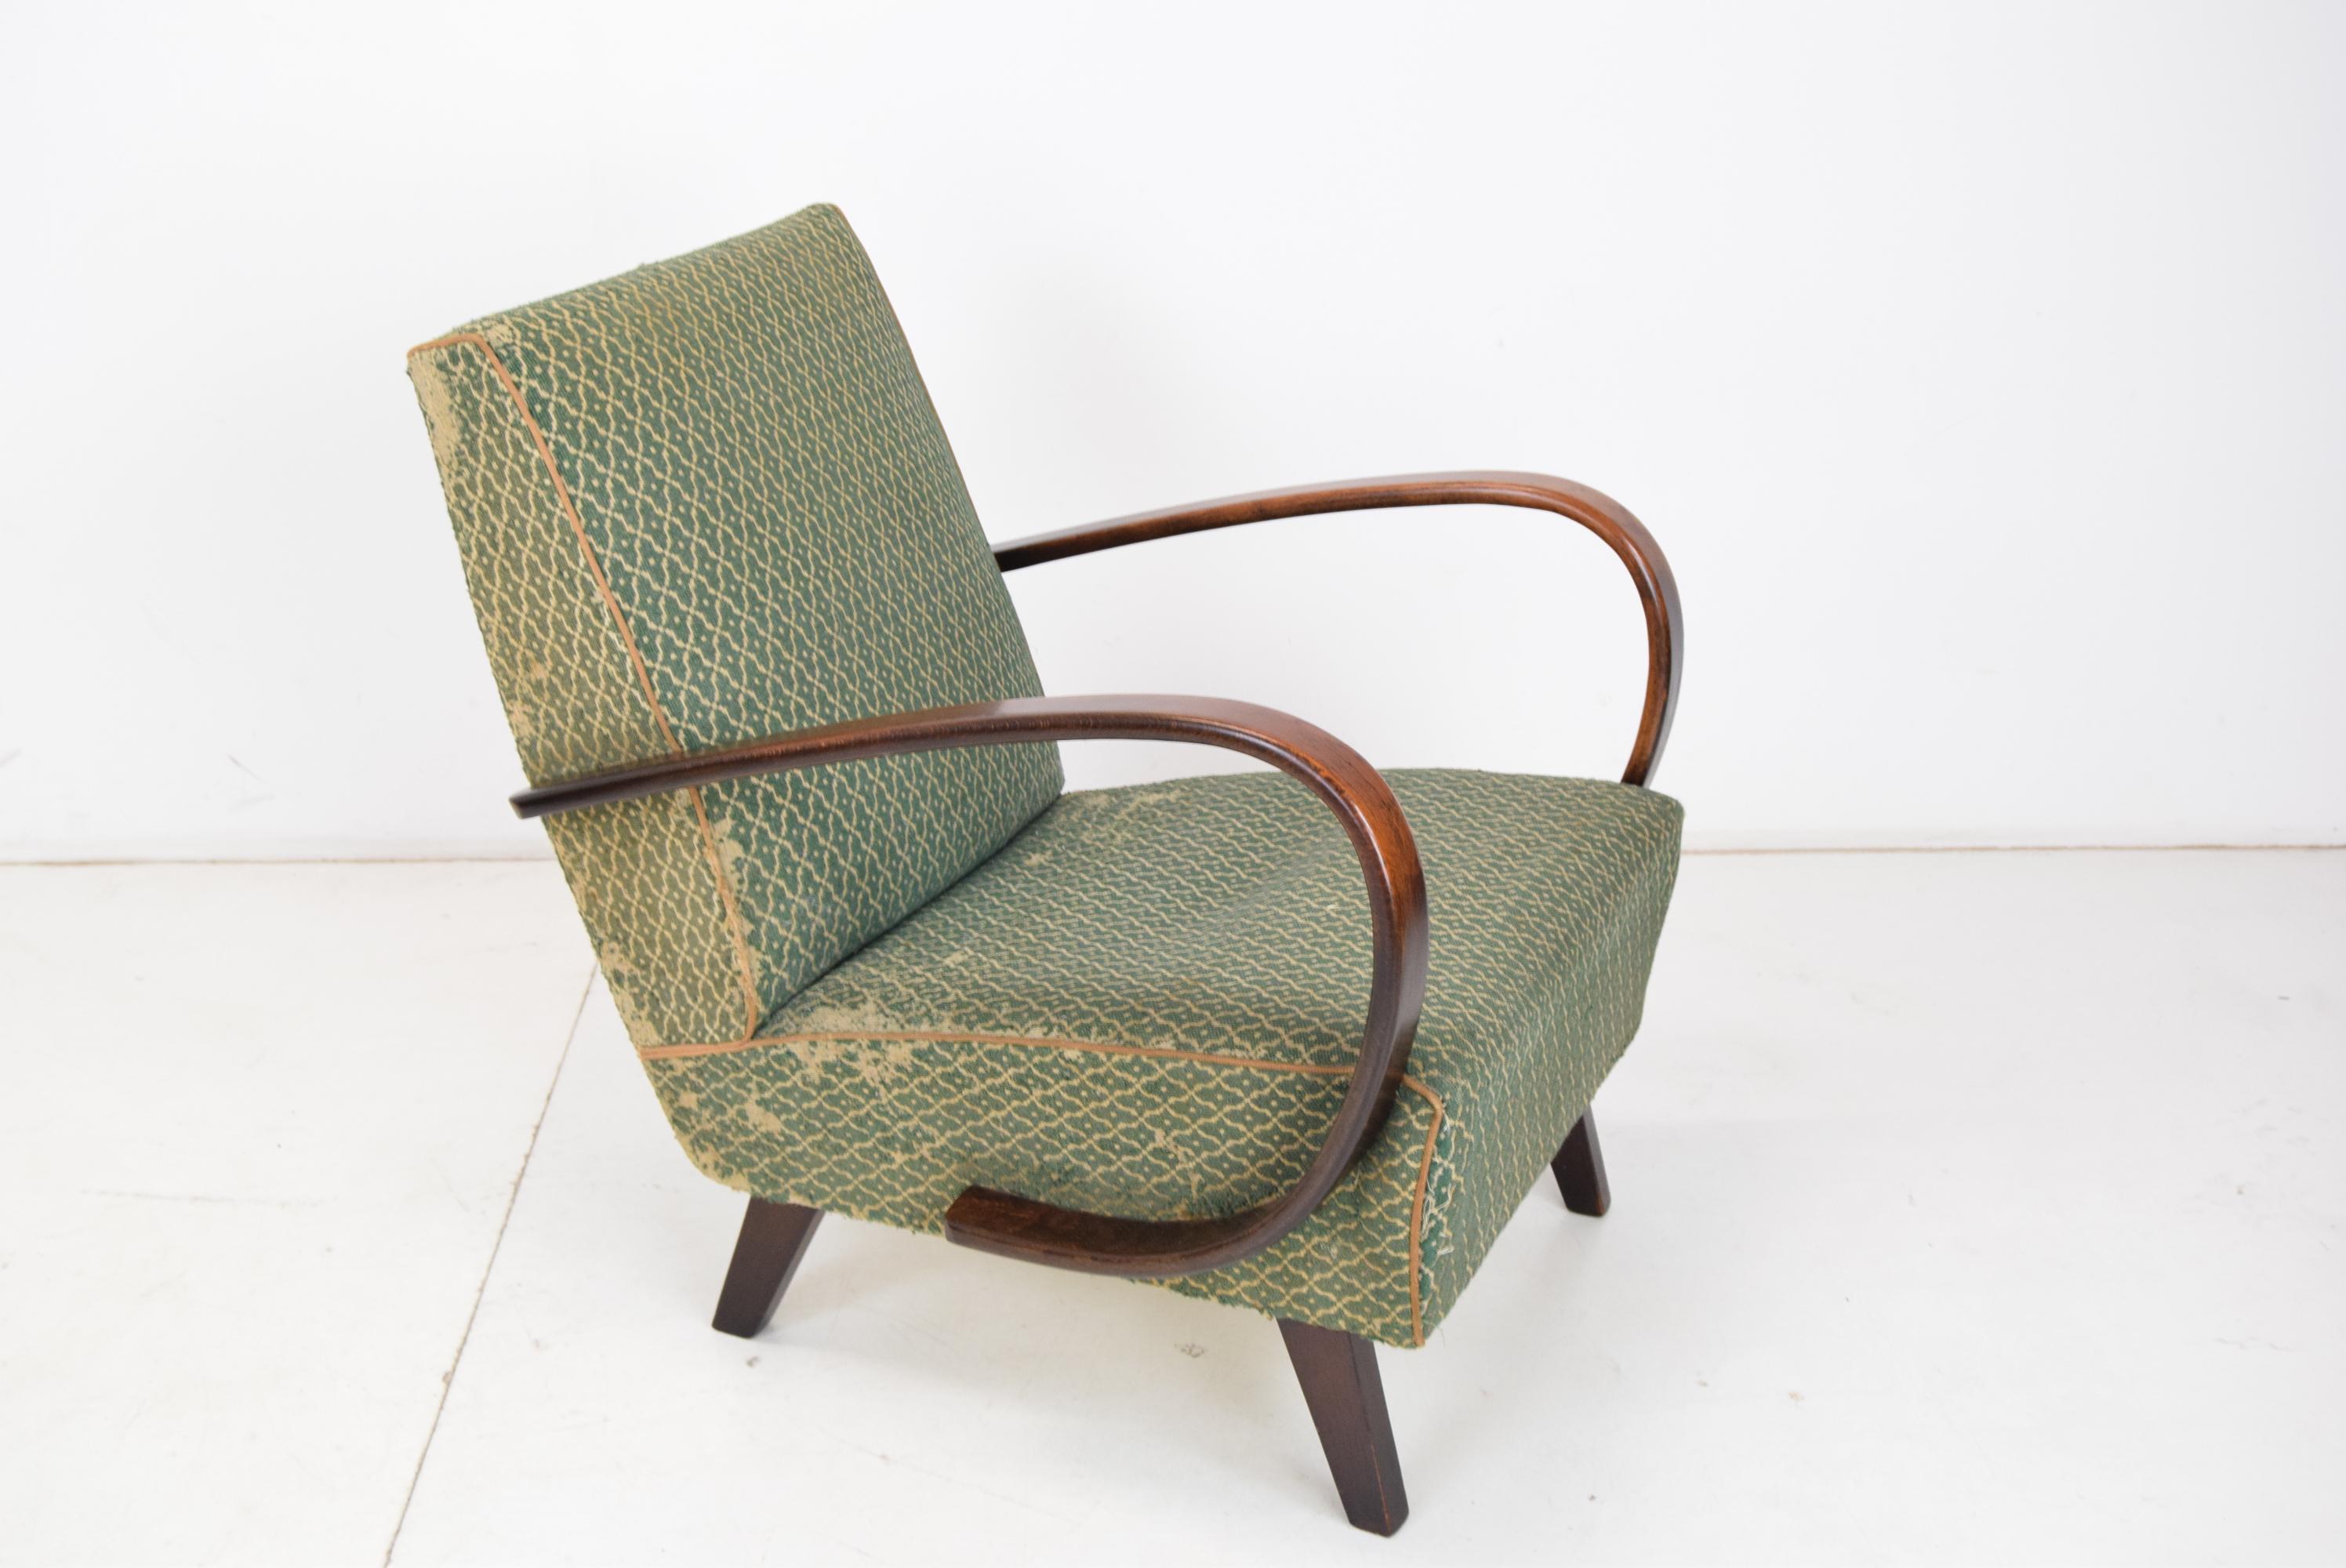 Hergestellt in der Tschechoslowakei
 Hergestellt aus Holz, Stoff 
Der Stuhl ist für eine Neupolsterung geeignet
Das Holz ist in gutem Zustand
Ursprünglicher Zustand.